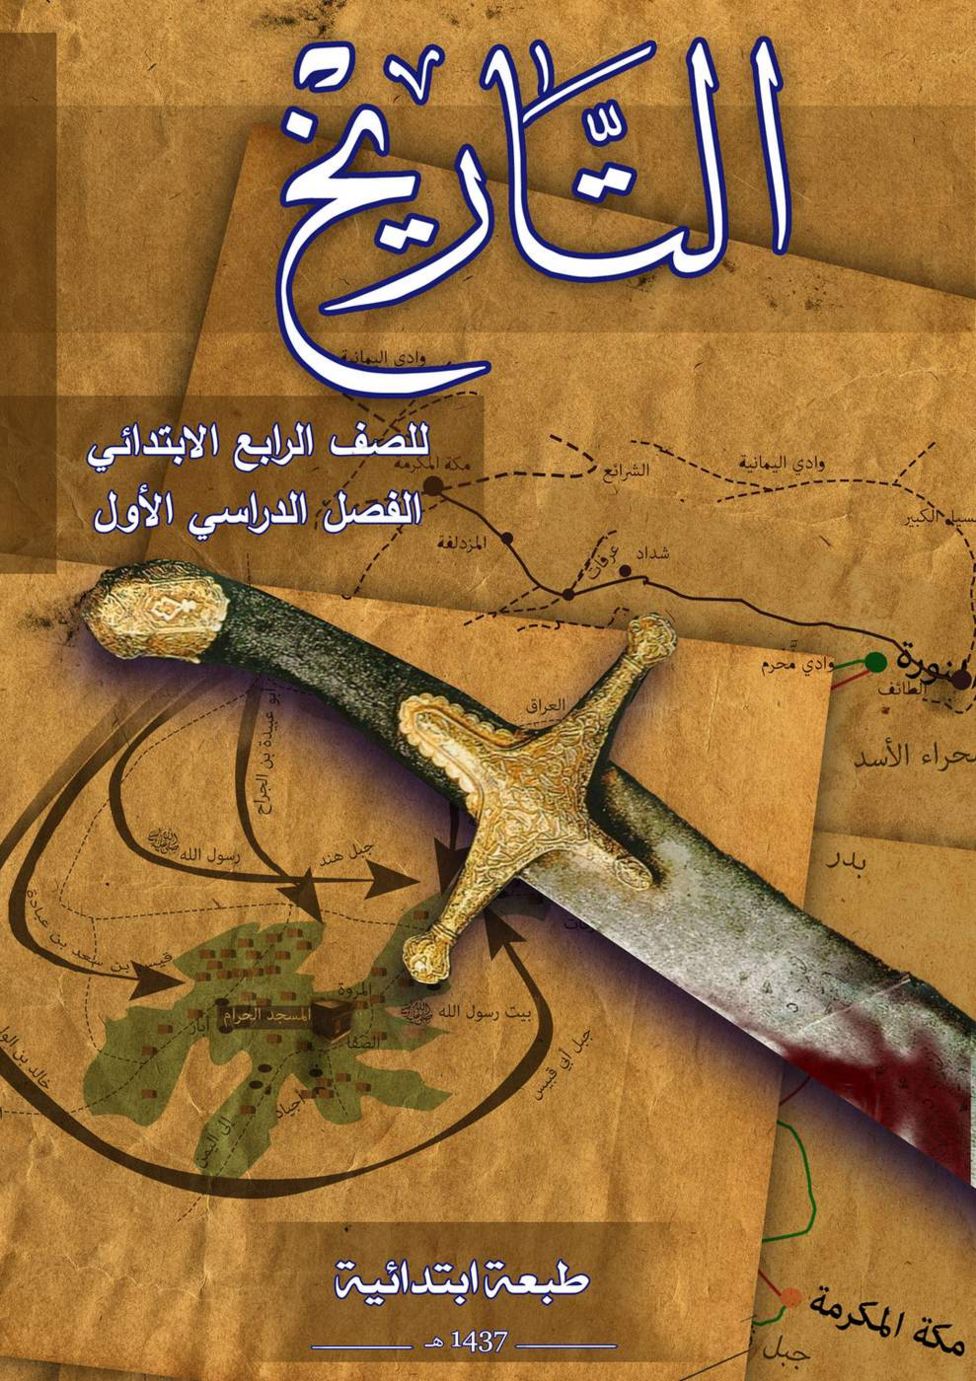 IŞİD'in 10 yaşındaki çocuklara okuttuğu tarih kitabı